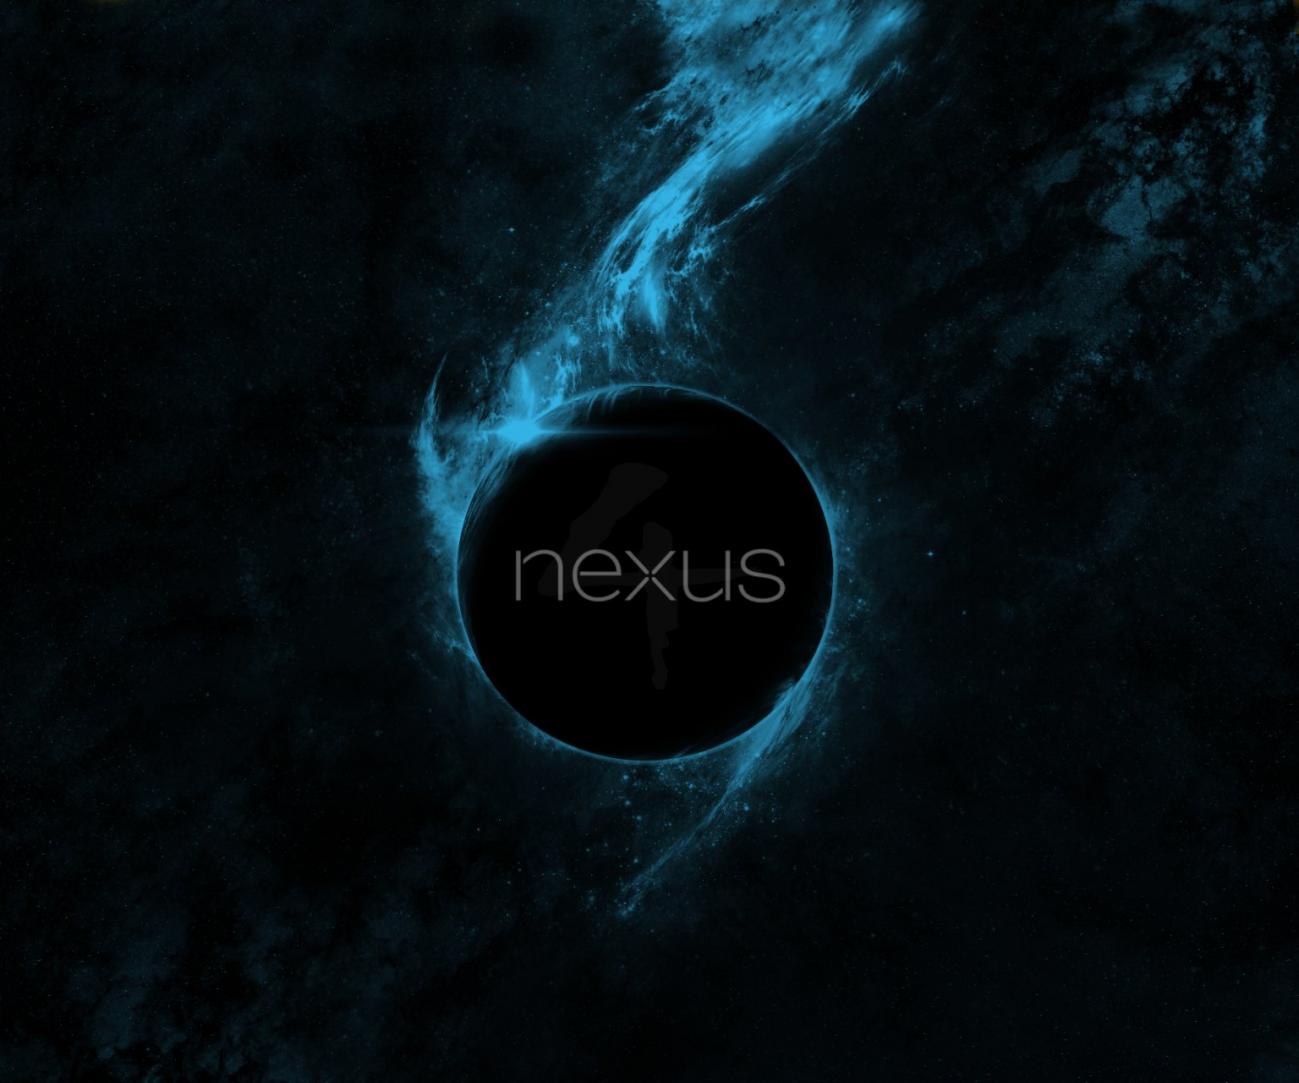 Nexus Wallpapers HD 46 images